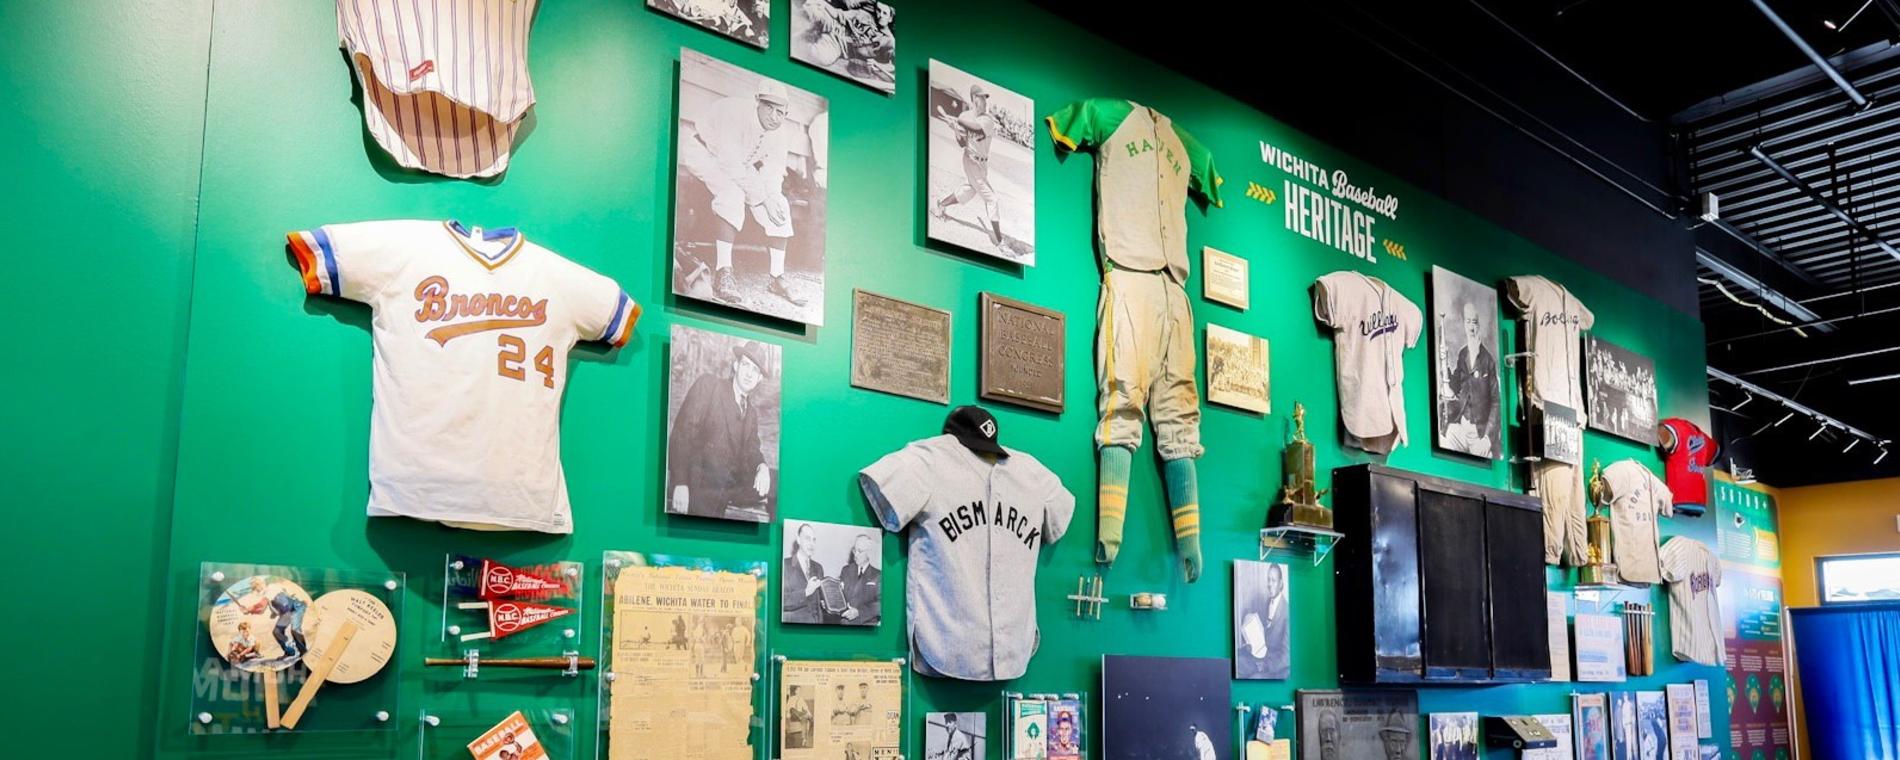 Wichita Baseball Museum_Riverfront Stadium Memoribilia